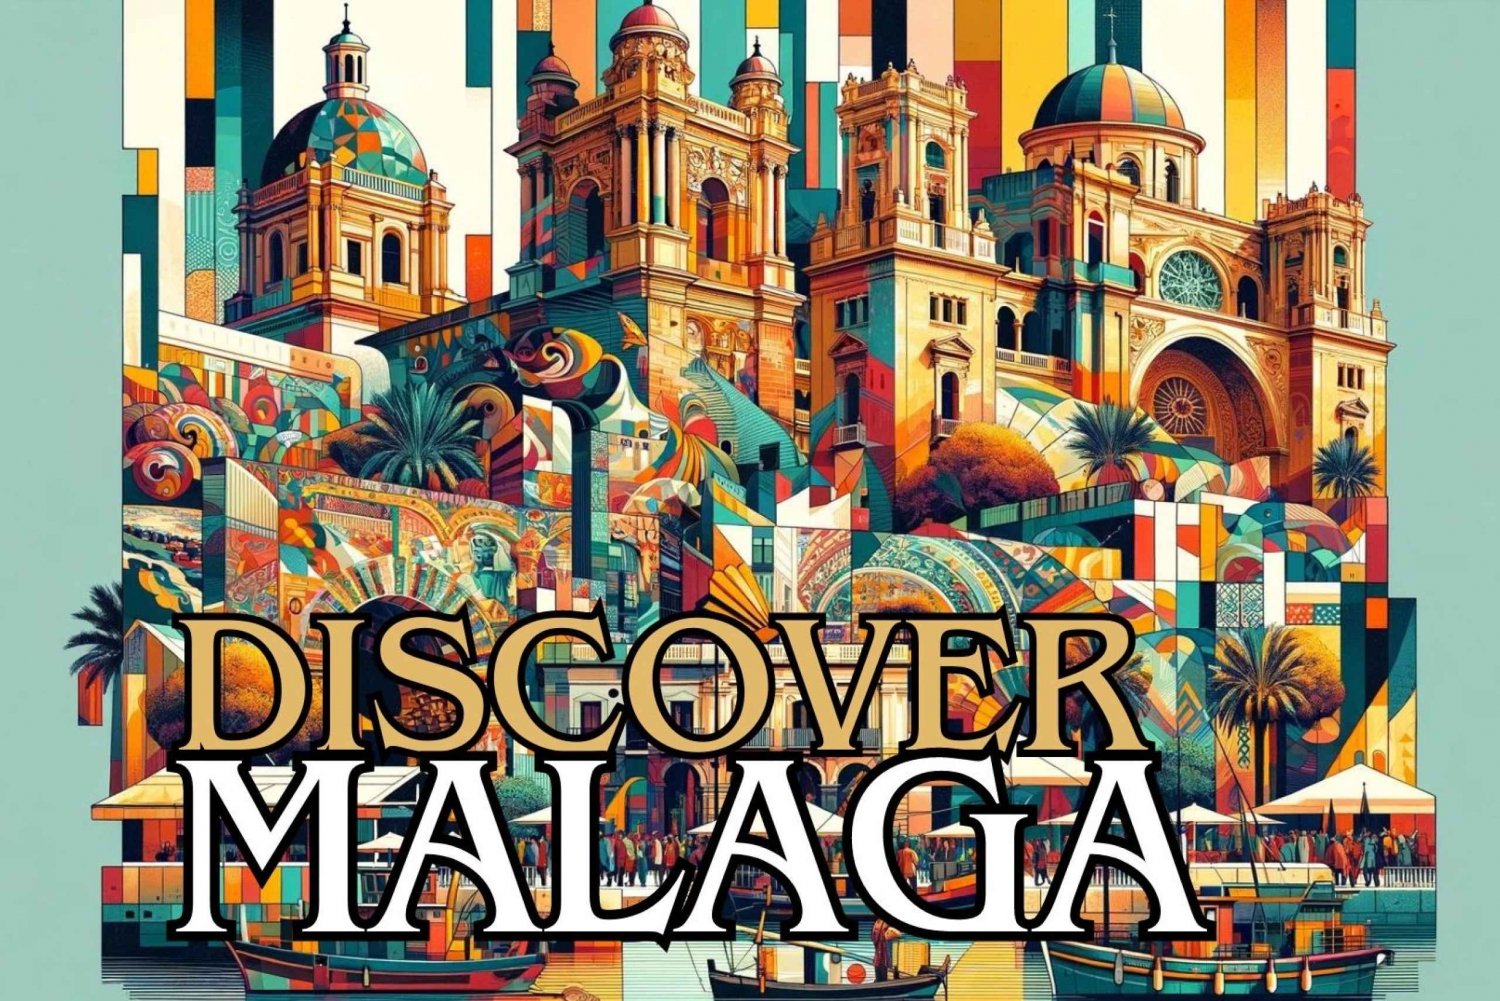 Oppdag Malaga: Selvguidende lydvandring med StoryHunt